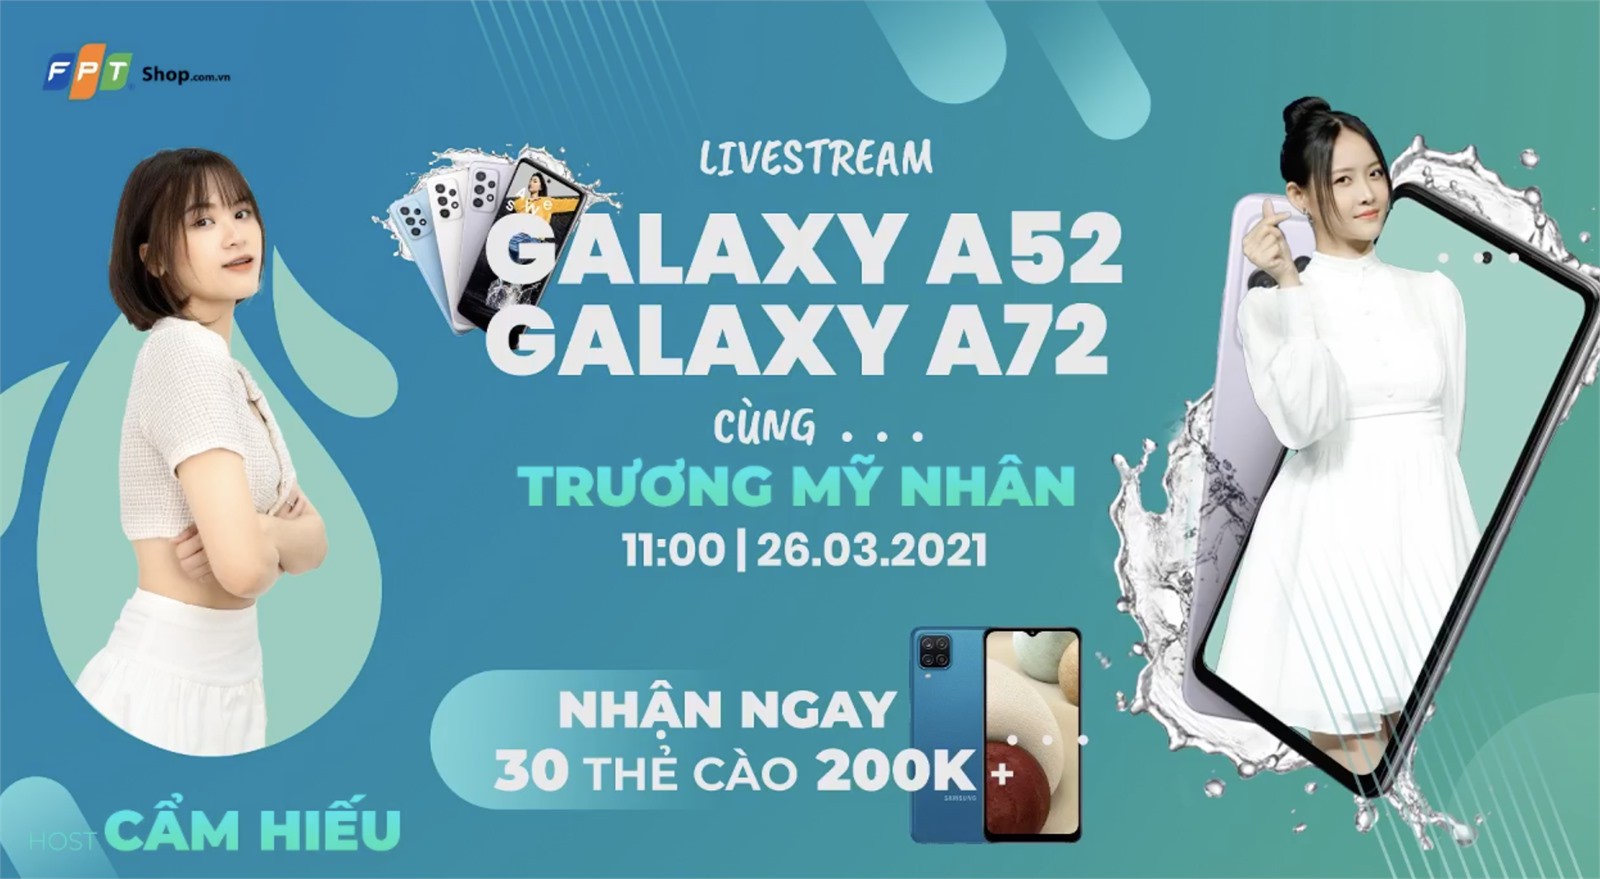 Trương Mỹ Nhân và Galaxy A52 A72